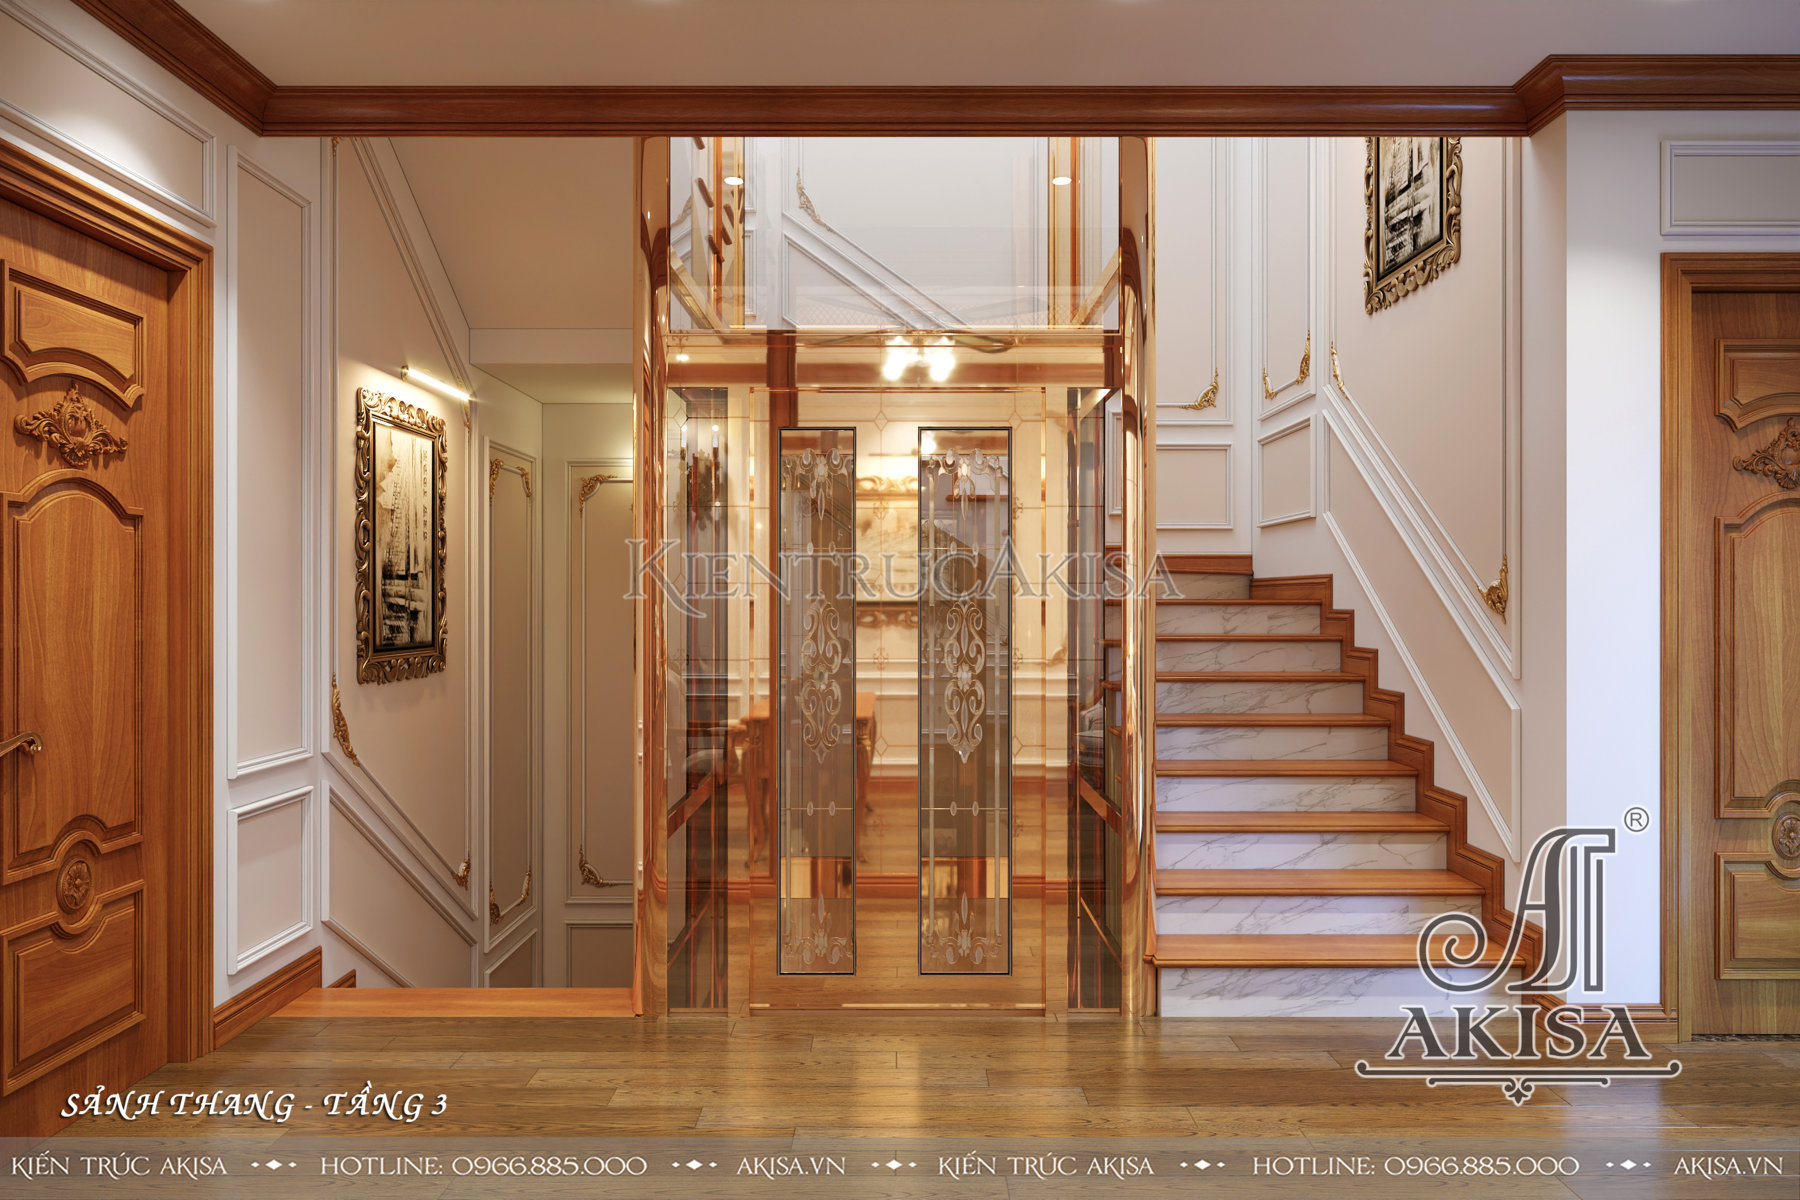 Thiết kế nội thất gỗ gõ đỏ biệt thự tân cổ điển - Sảnh thang